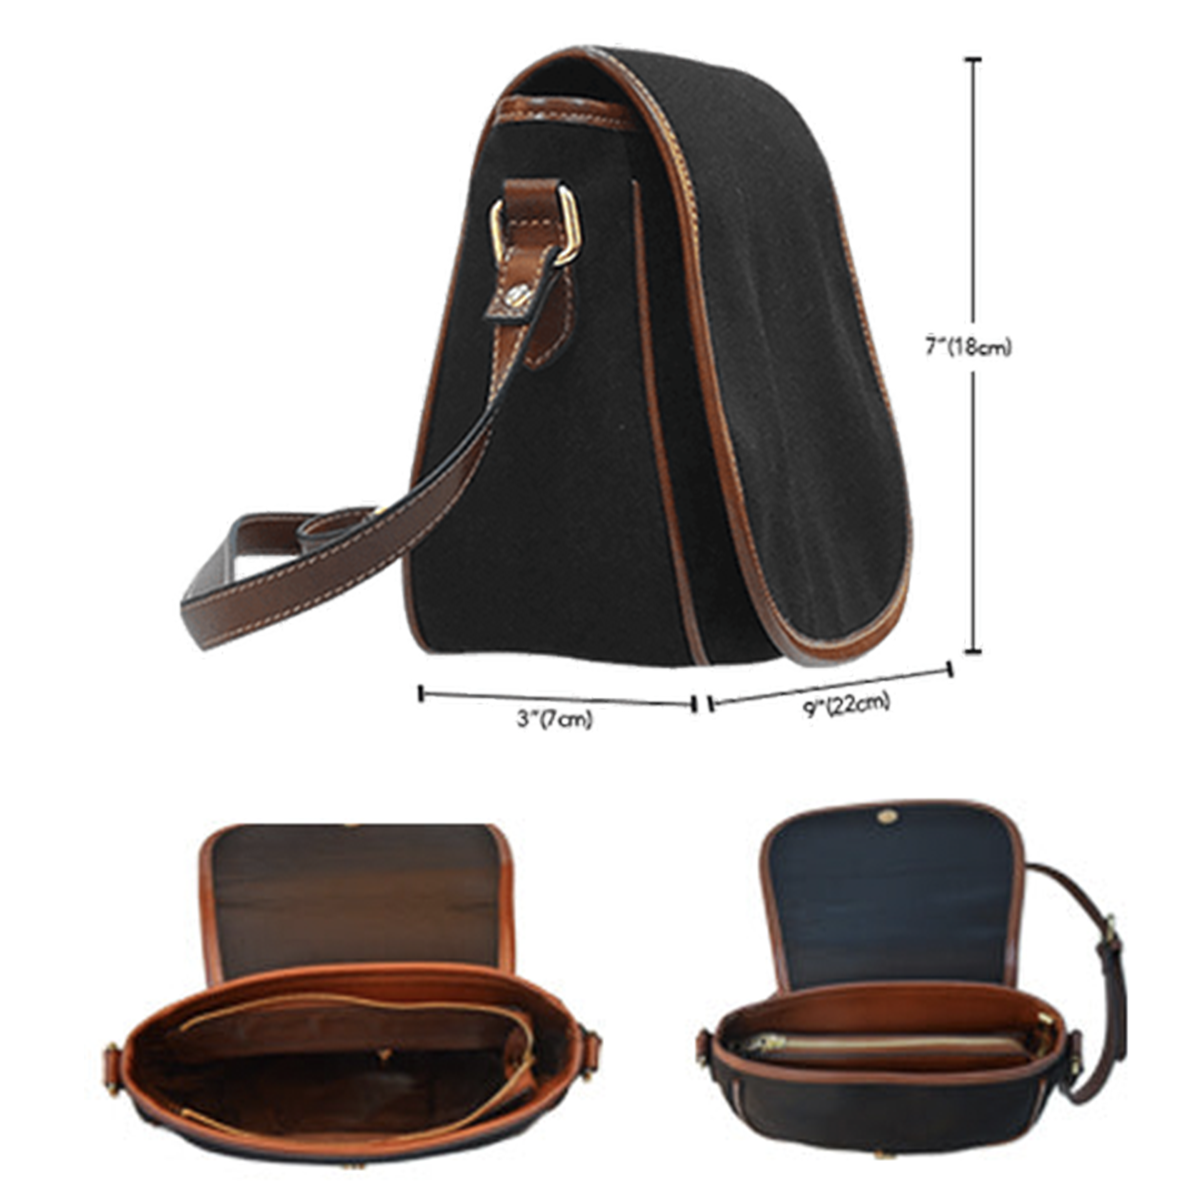 Armstrong Tartan Saddle Handbags